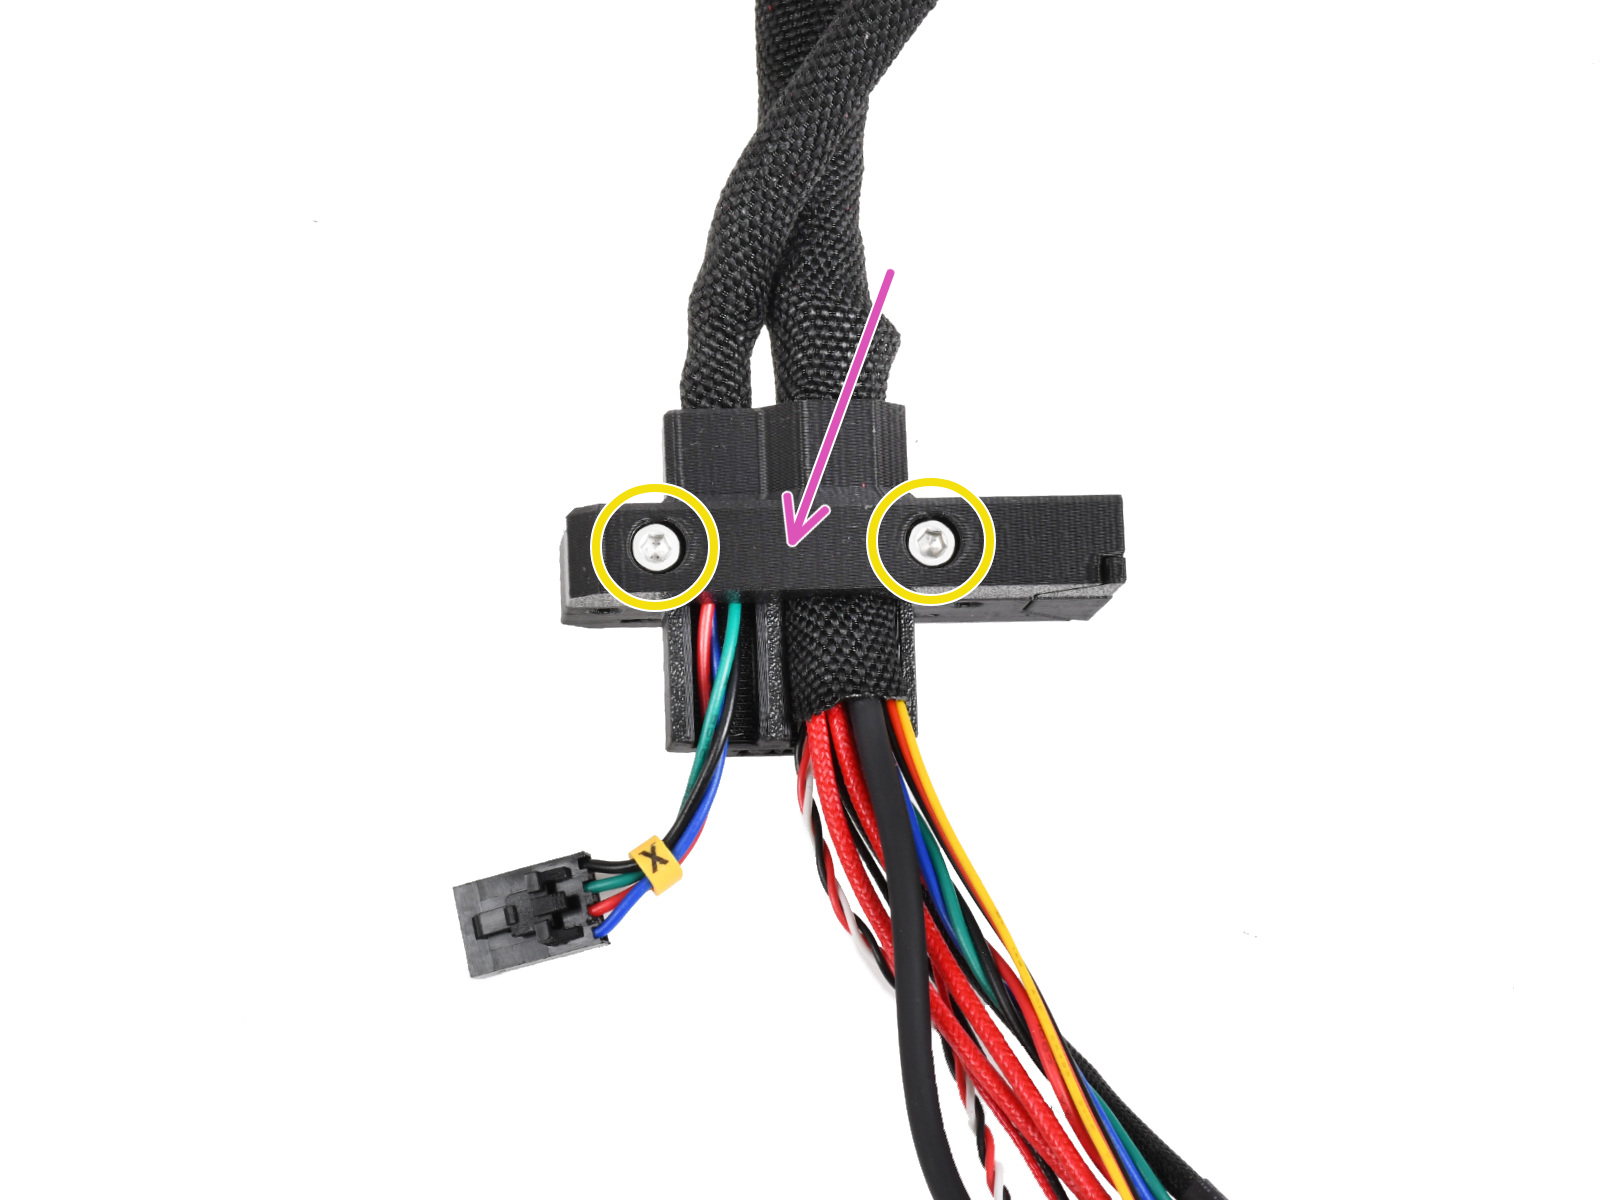 Assemblaggio del supporto Ext-cable-holder